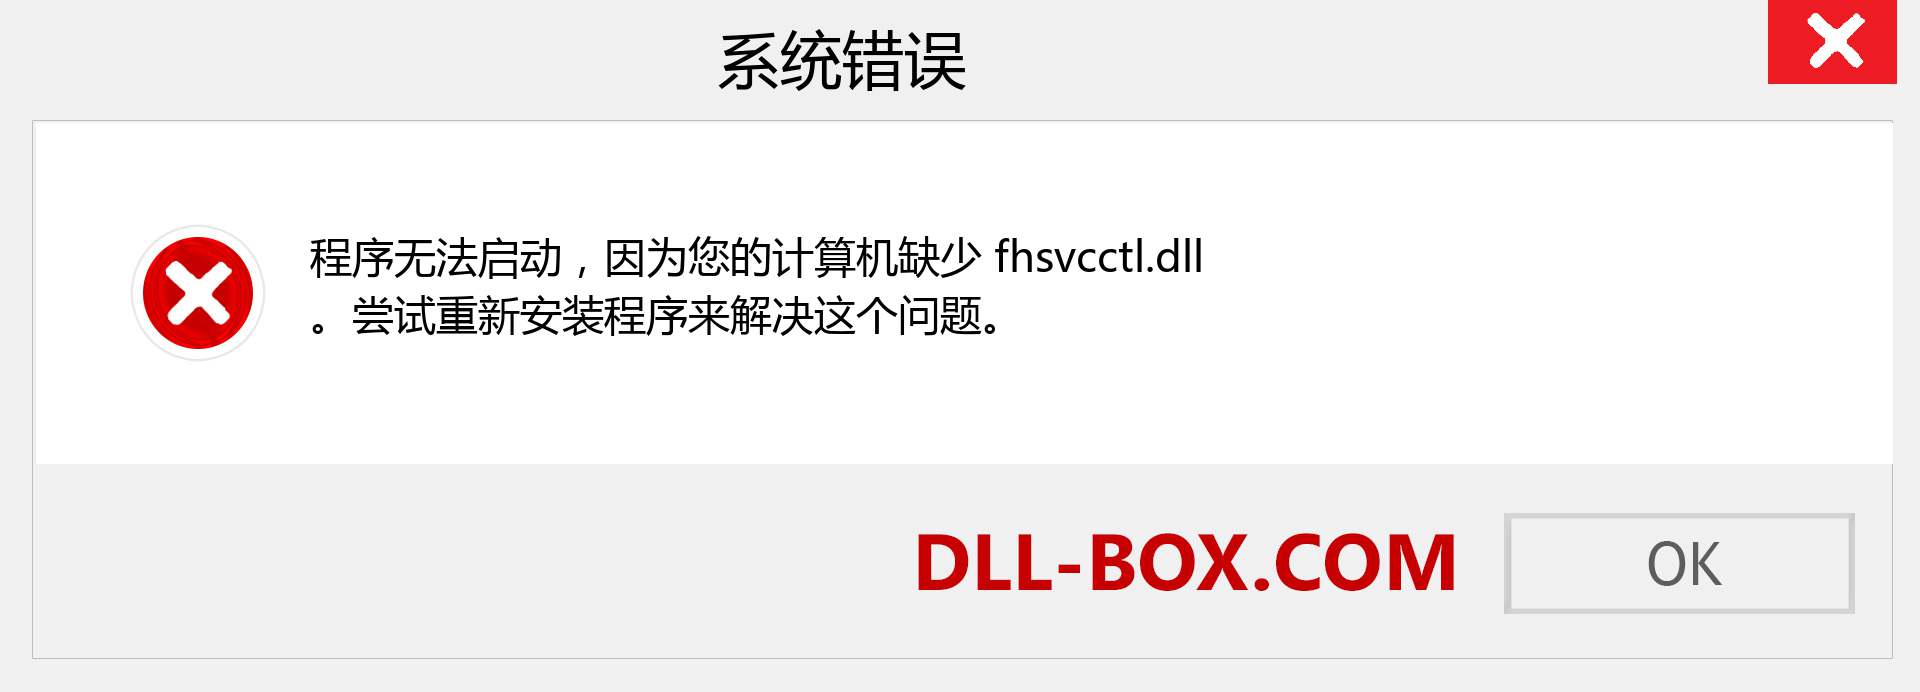 fhsvcctl.dll 文件丢失？。 适用于 Windows 7、8、10 的下载 - 修复 Windows、照片、图像上的 fhsvcctl dll 丢失错误